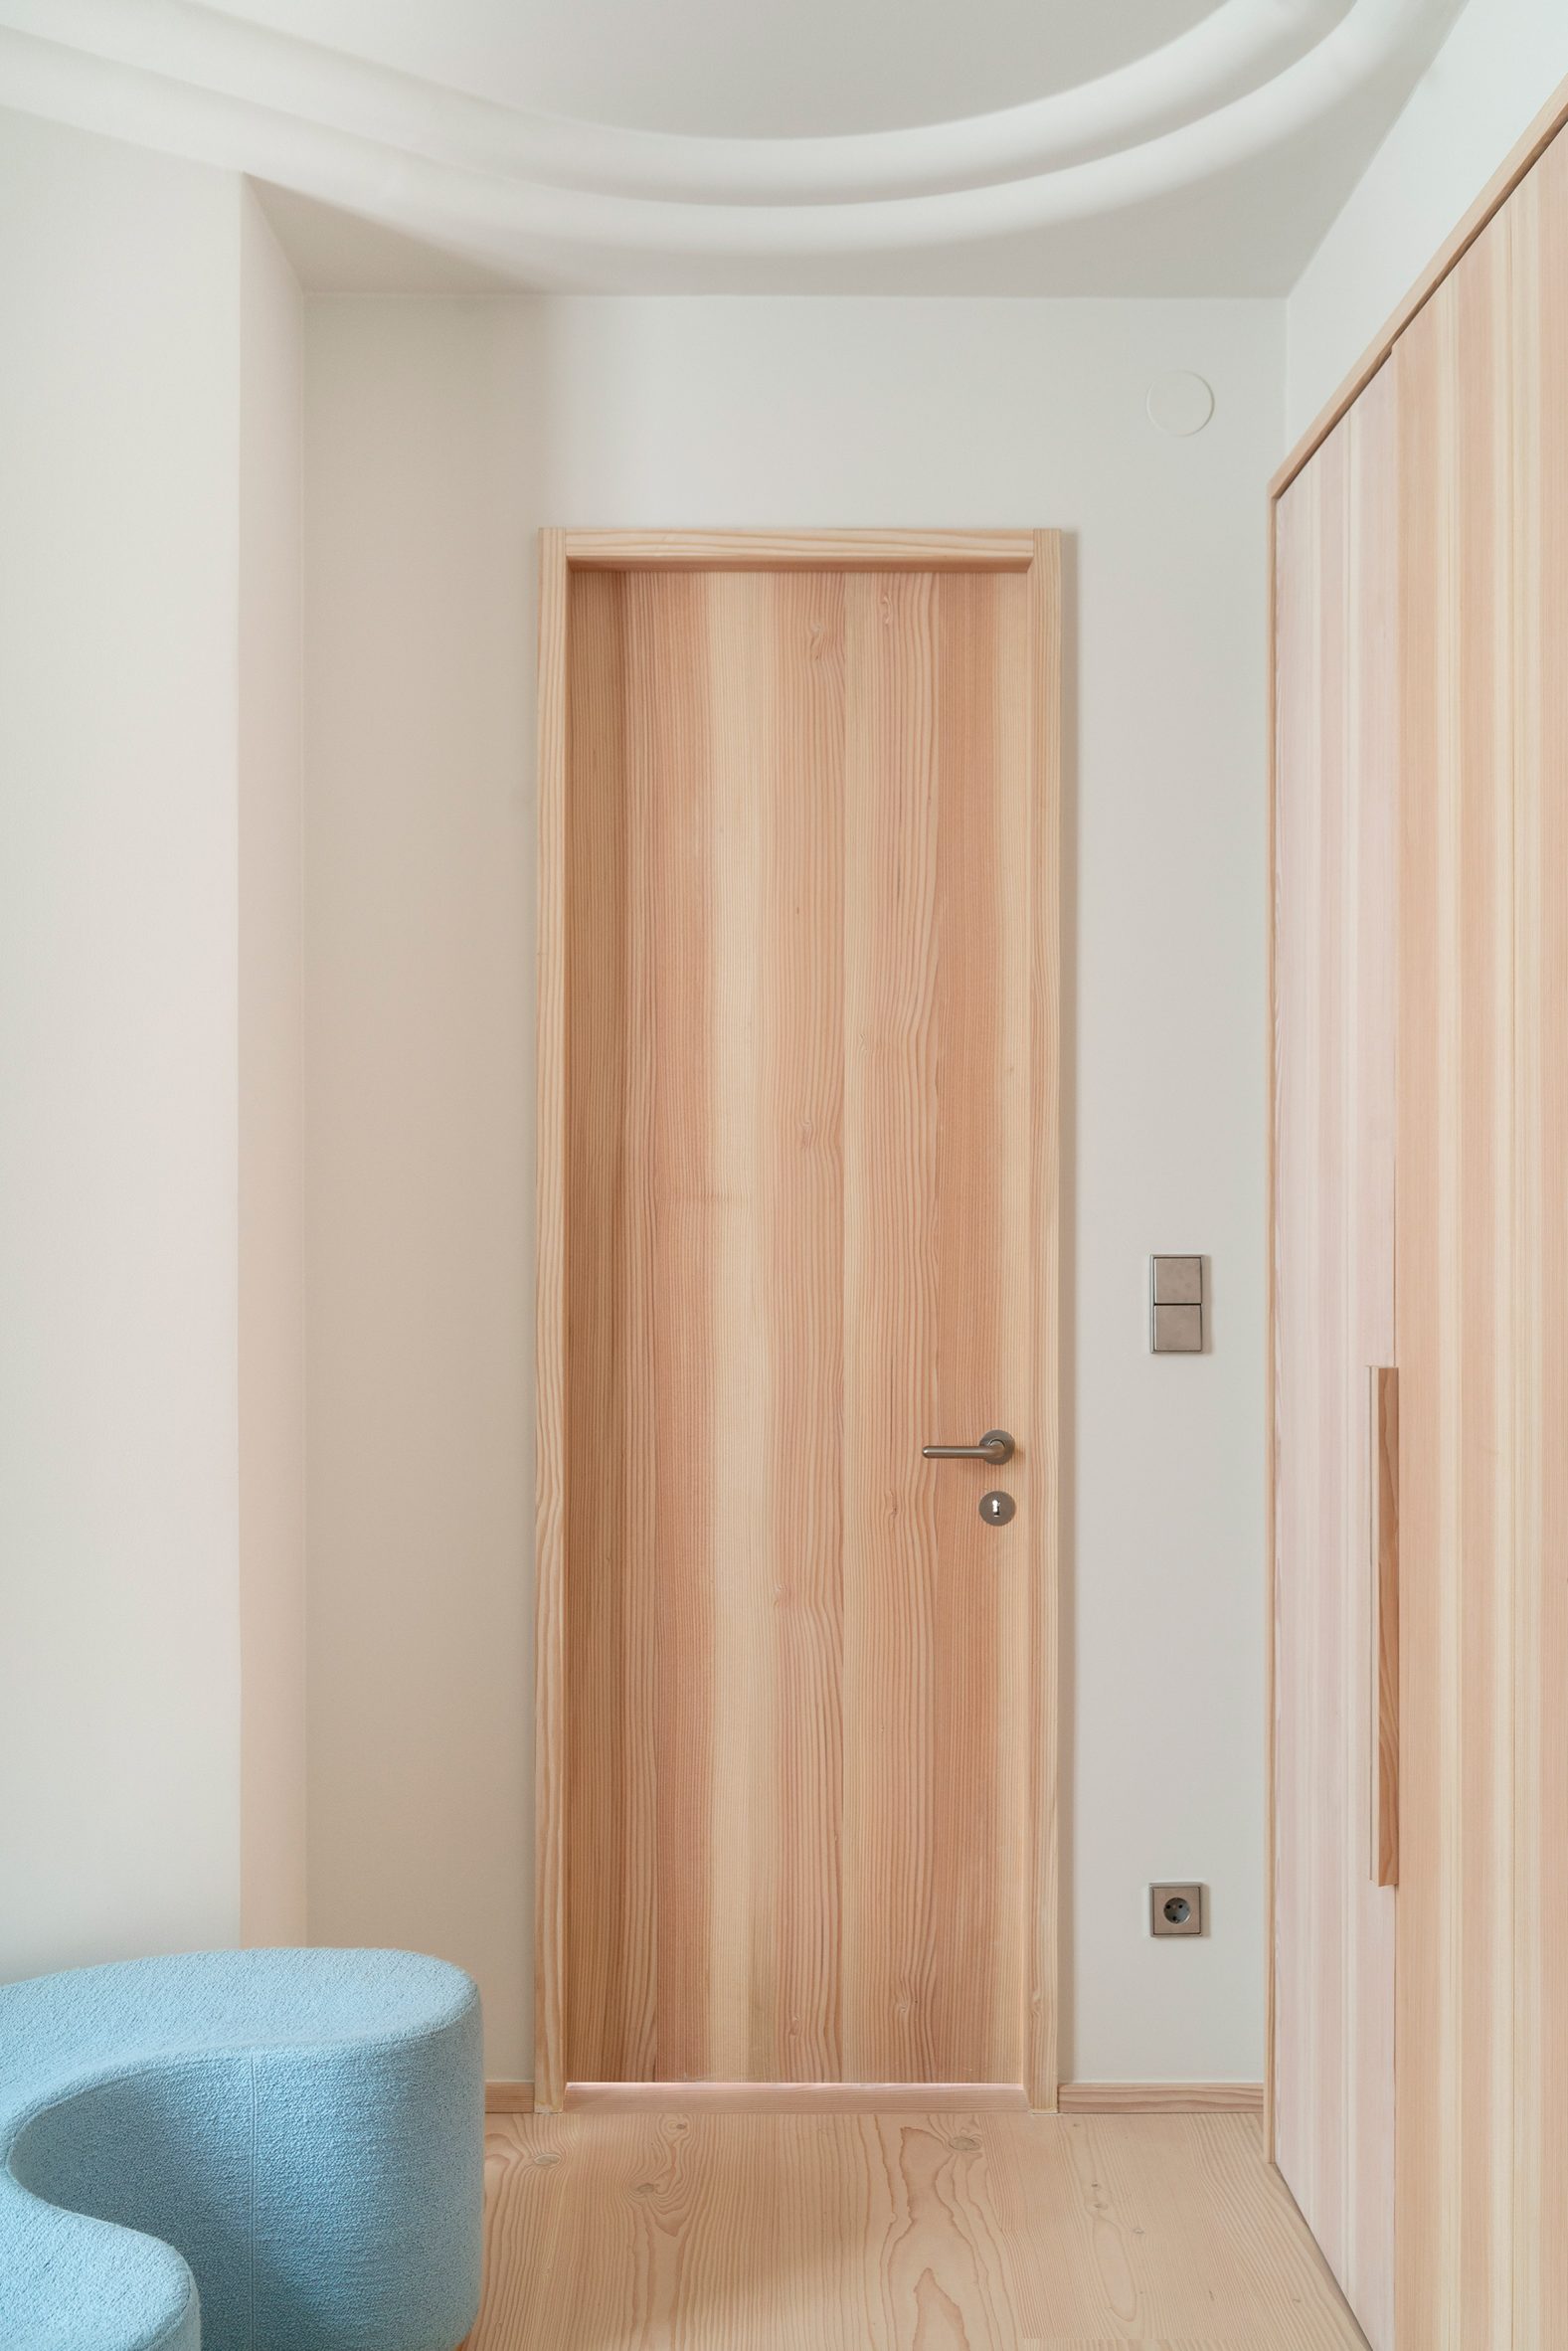 Hallway of Stockholm apartment by Note Design Studio with wooden door